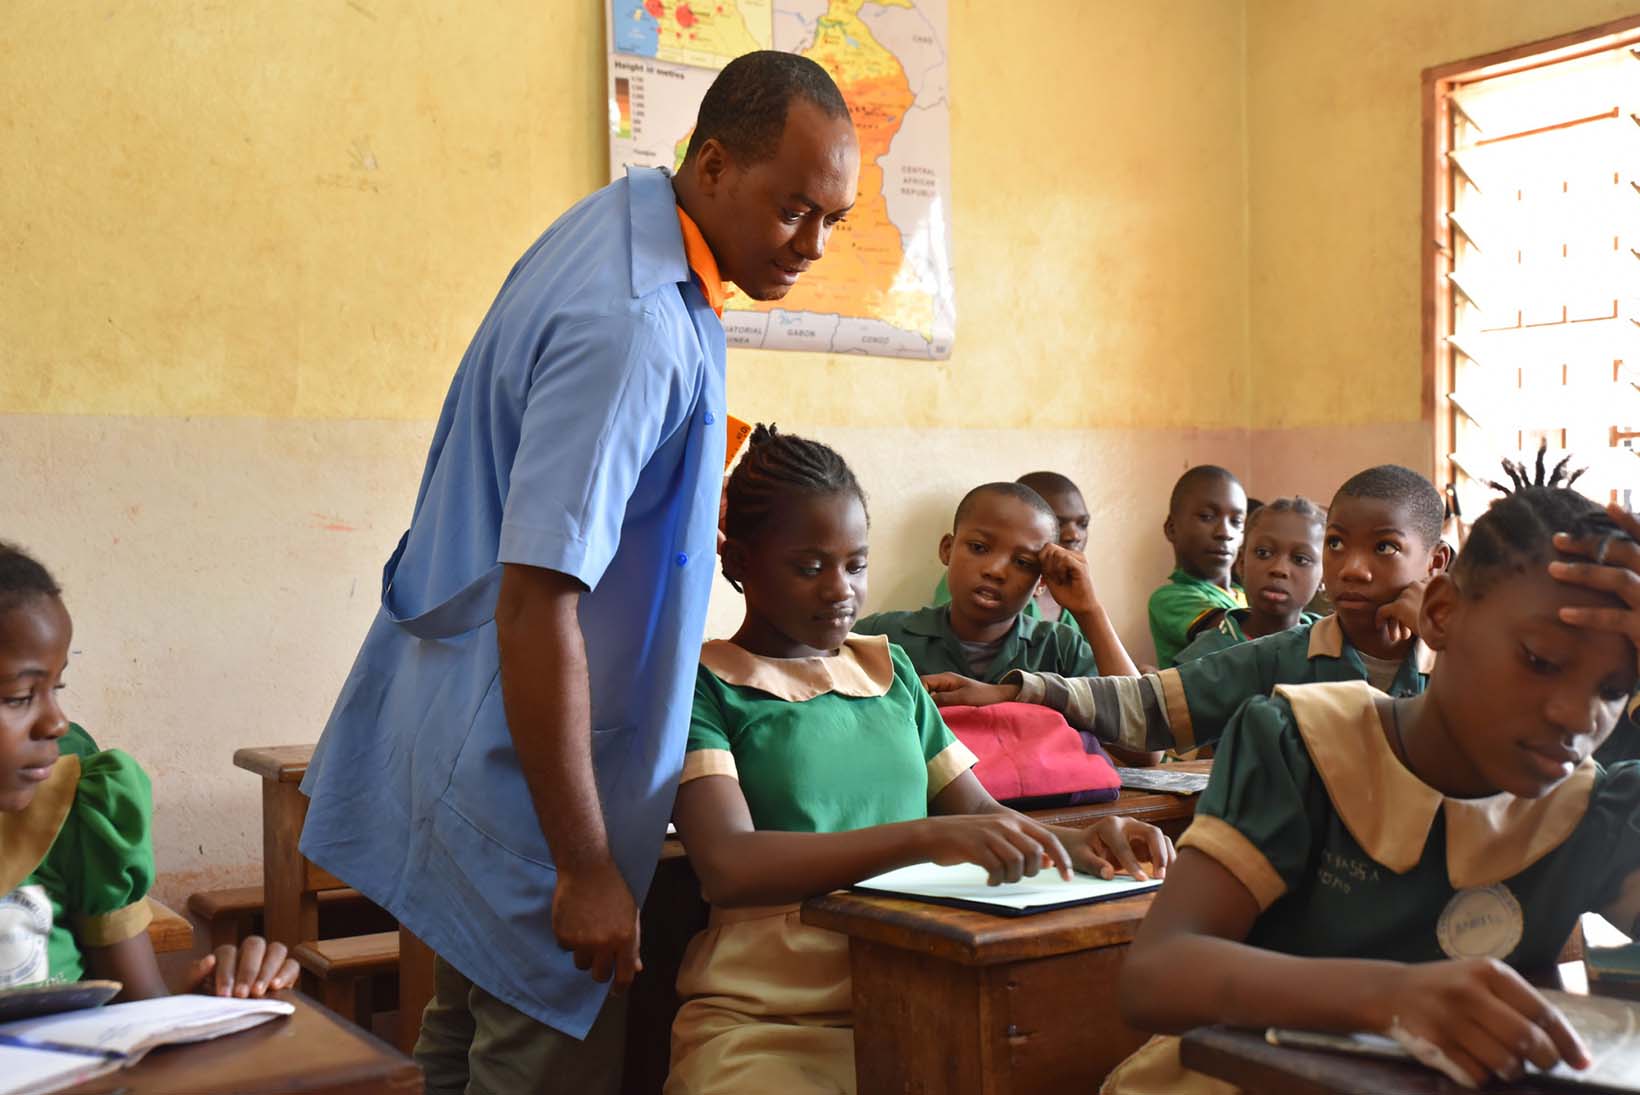 Un insegnante di una scuola inclusiva camerunense controlla durante la lezione gli appunti in Braille di un’allieva cieca.